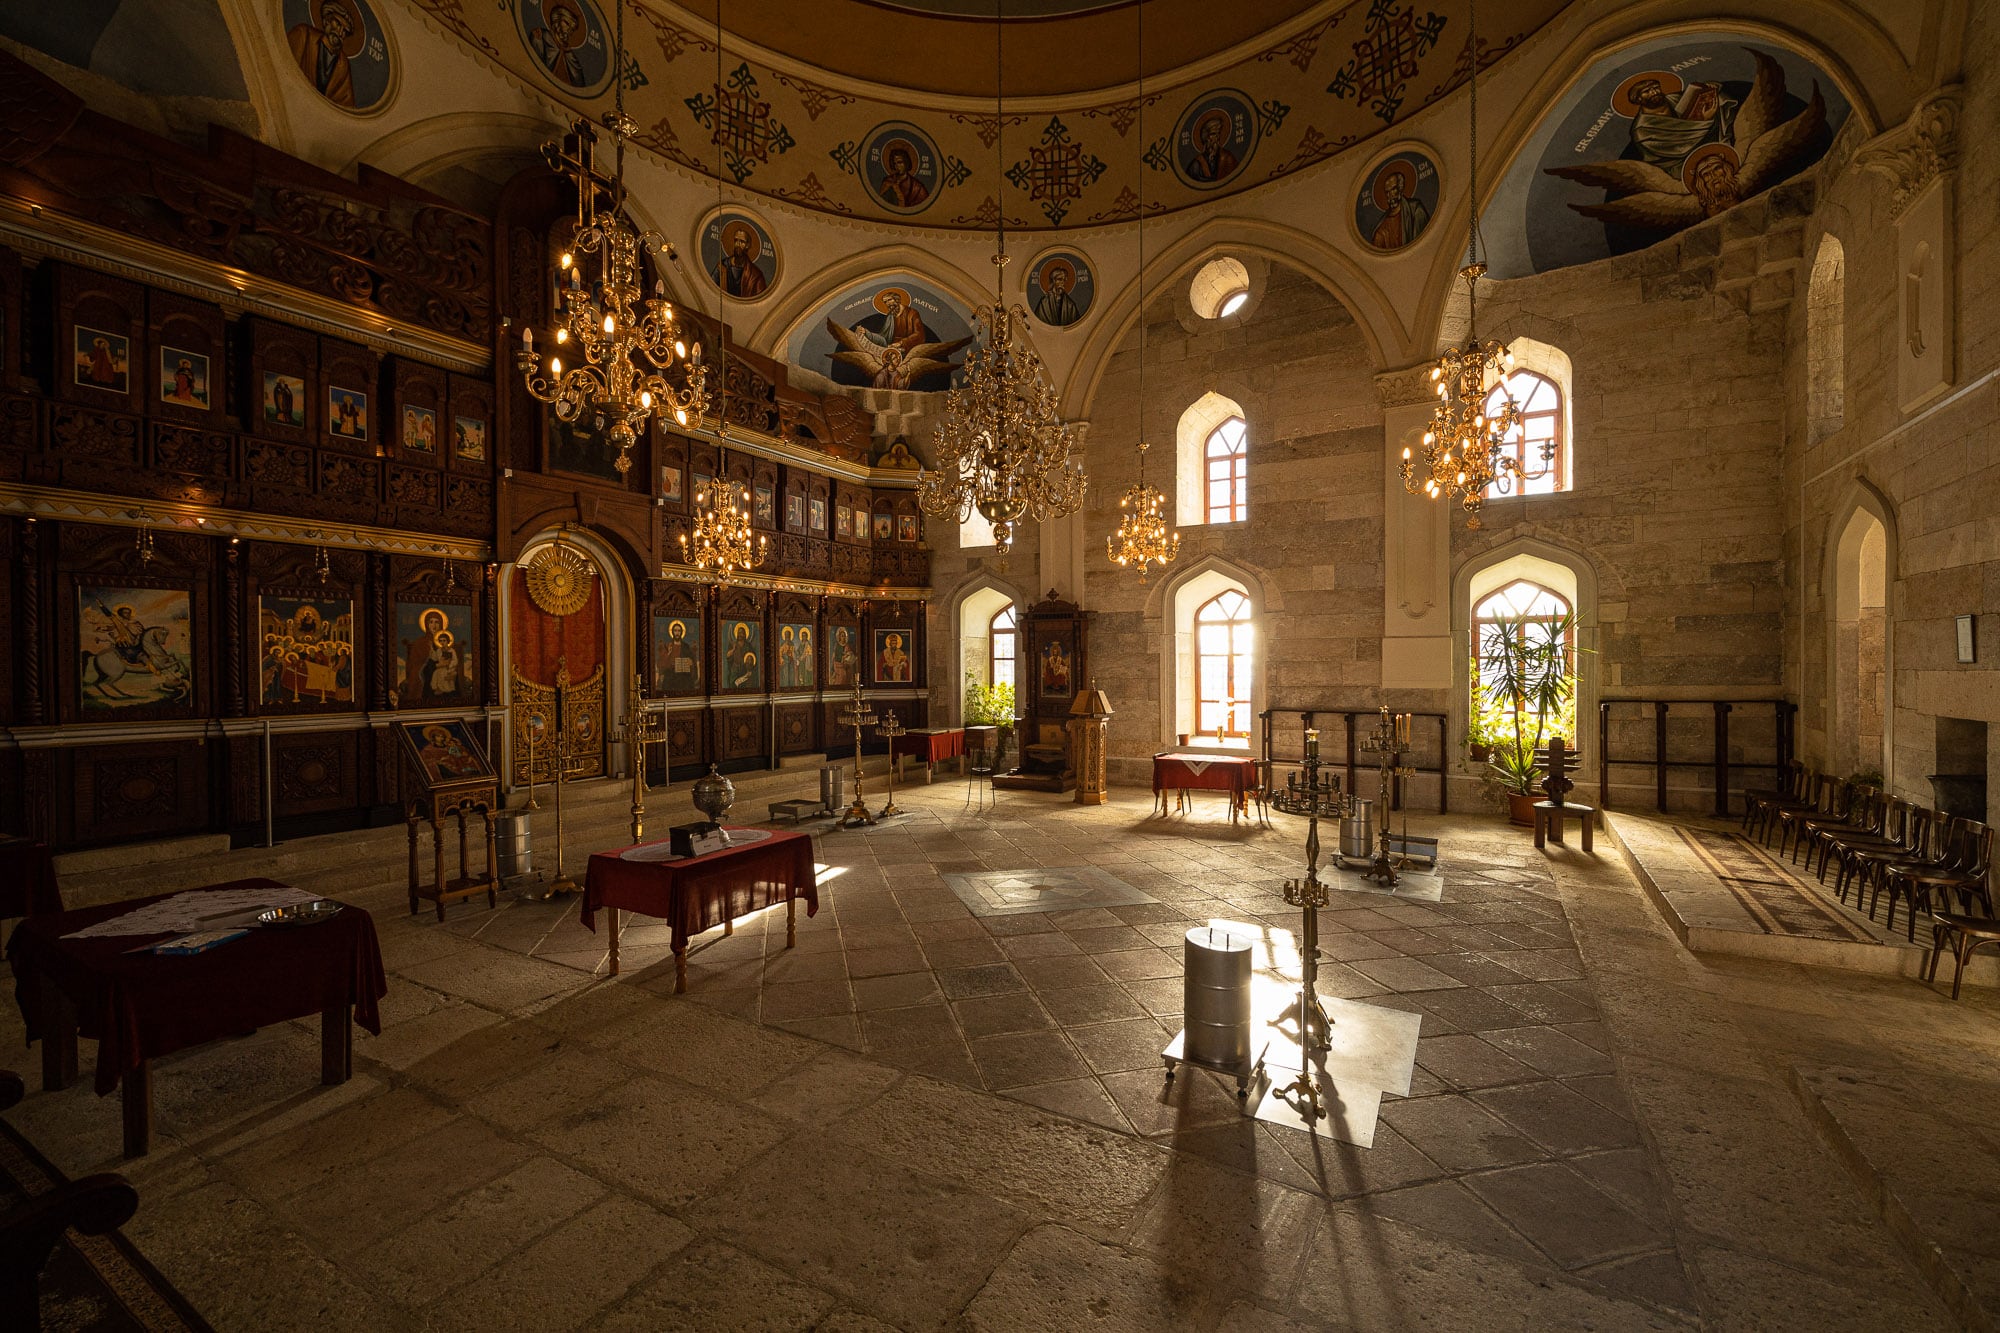 inside the Uzundzhovo church